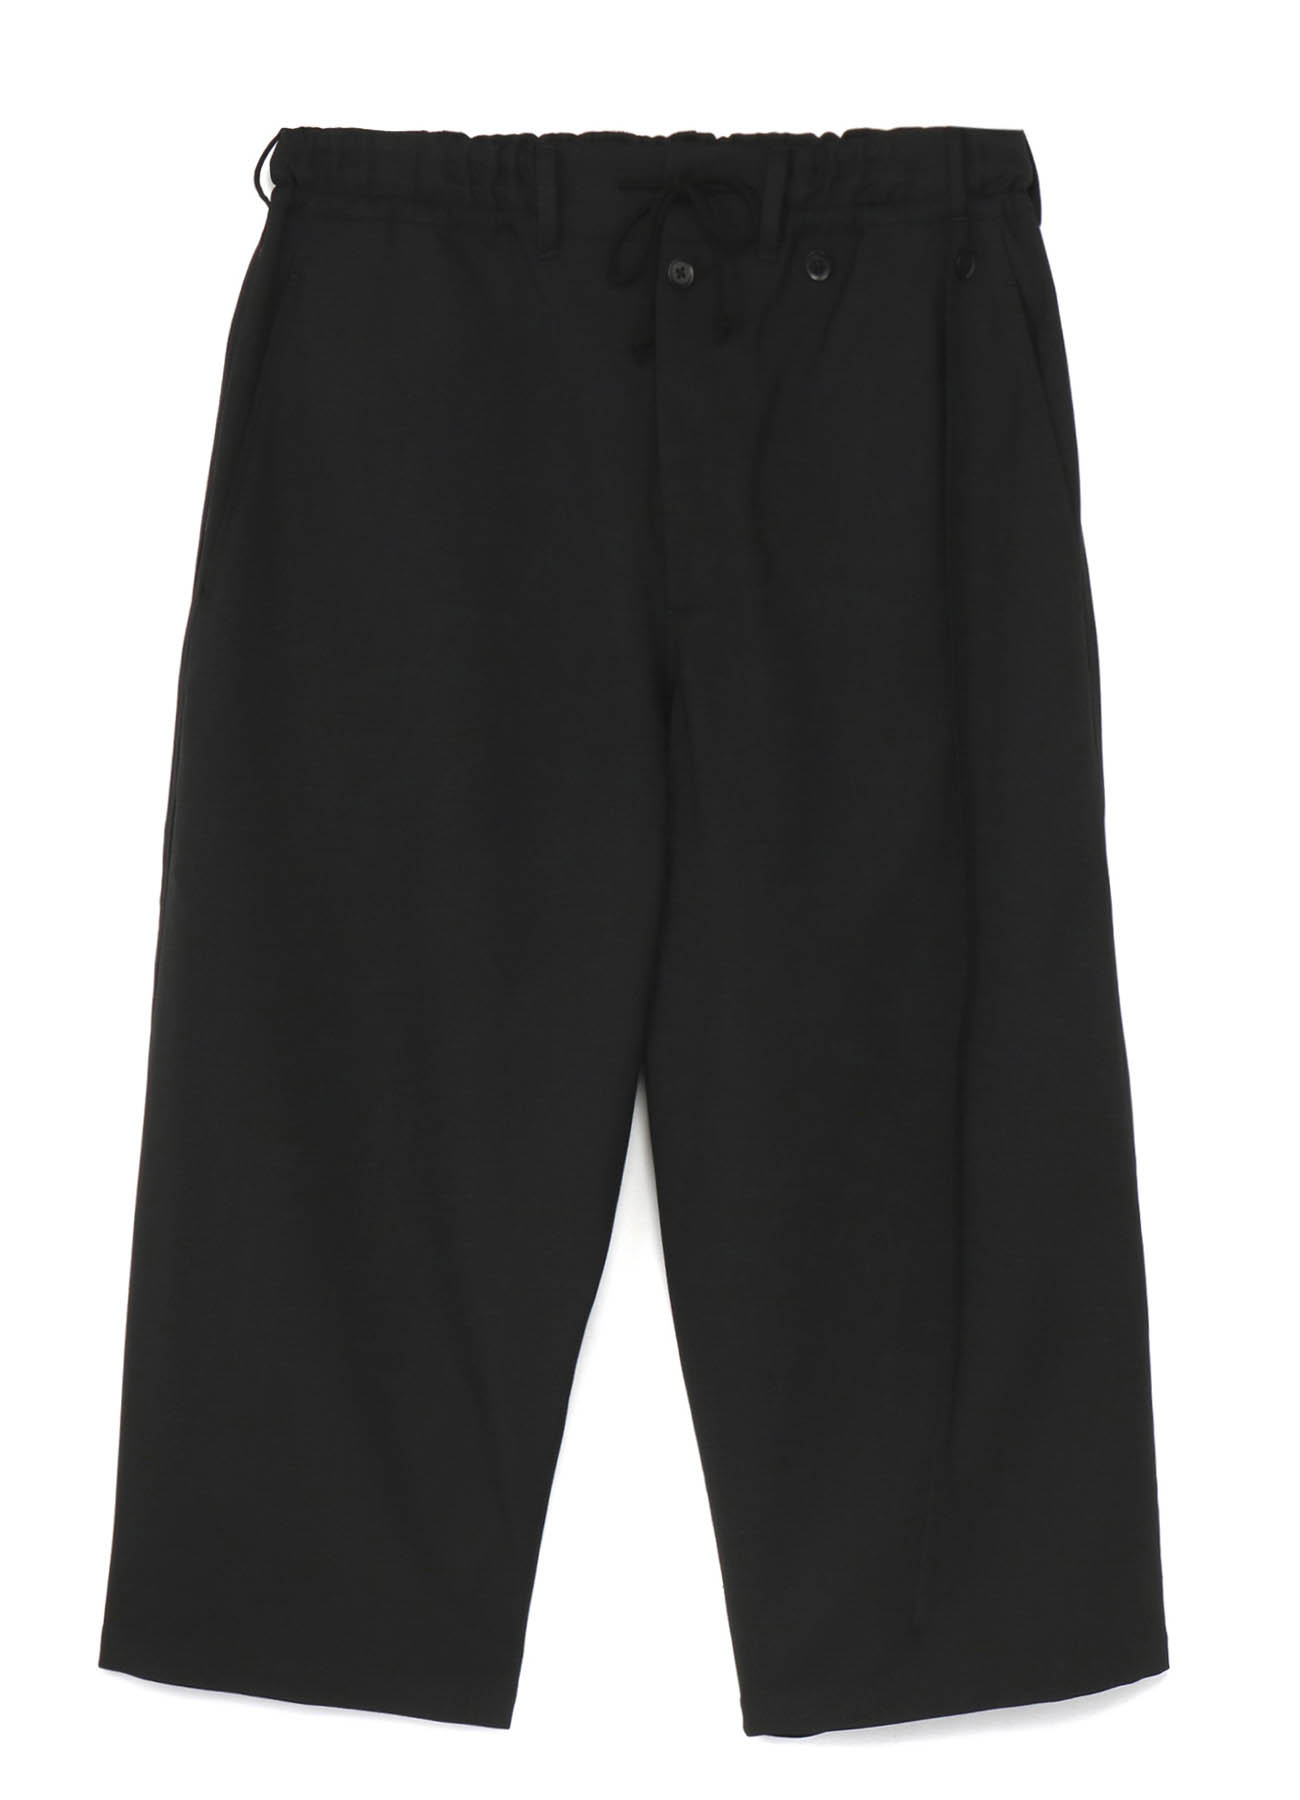 T/W Gabardine Detachable Skirt Pants